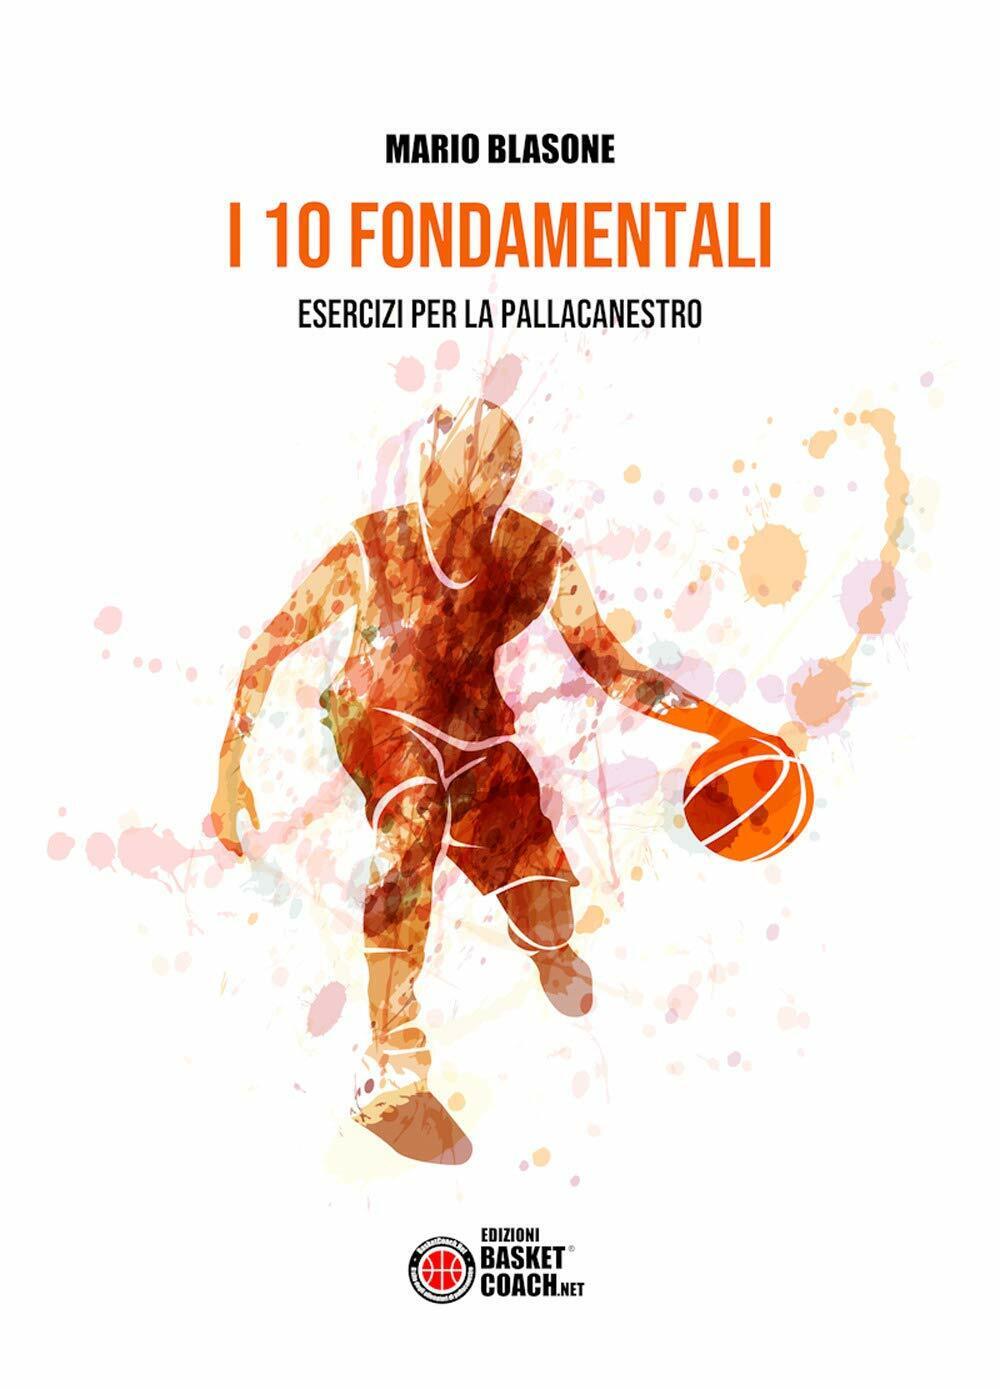 I 10 fondamentali. Esercizi per la pallacanestro - Mario Blasone - 2019 libro usato